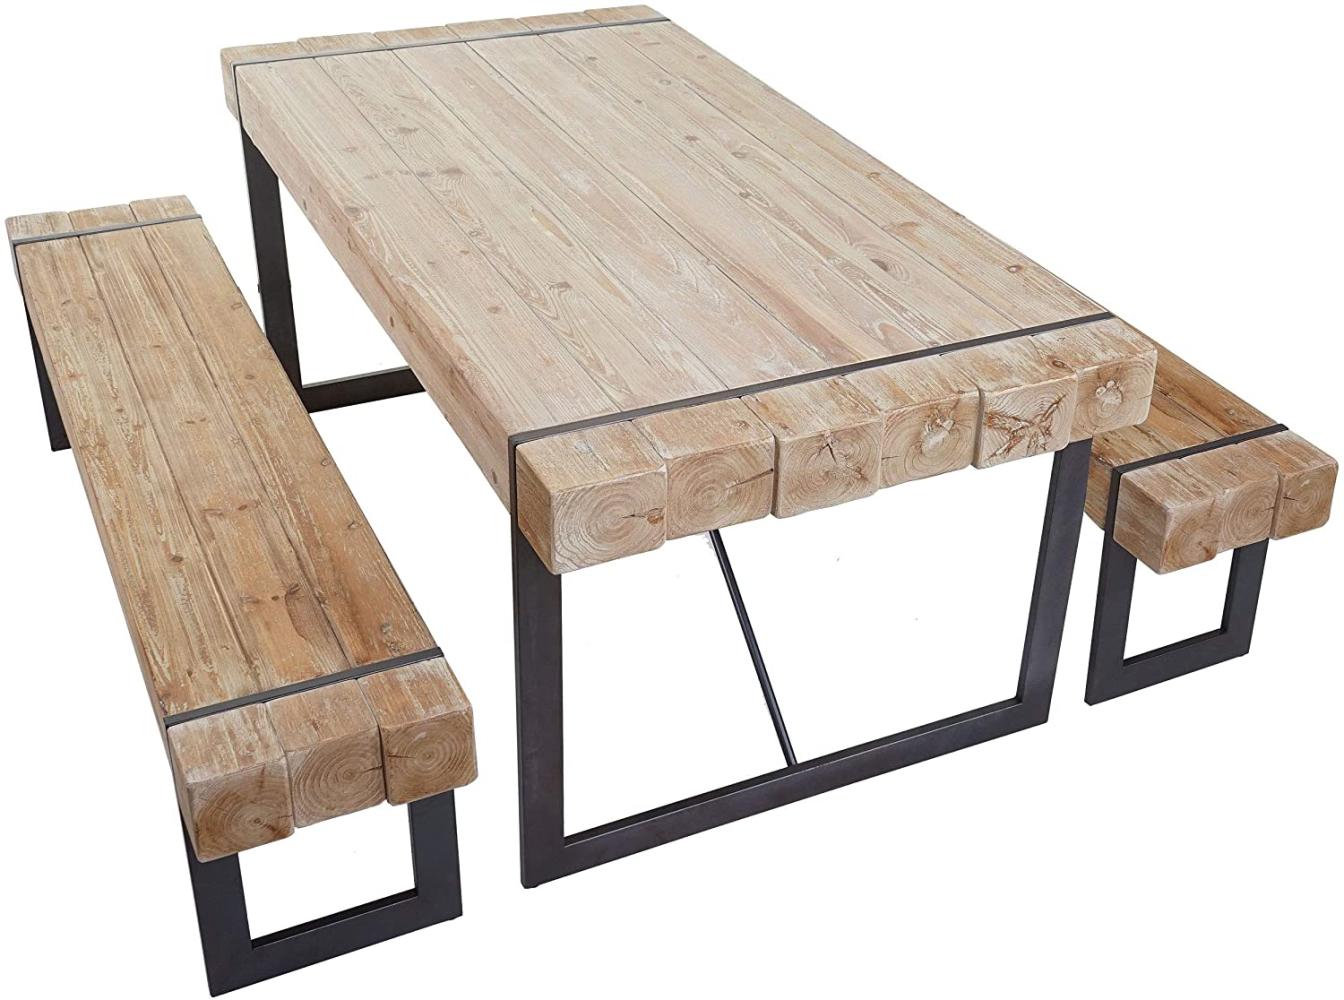 Esszimmergarnitur HWC-A15, Esstisch + 2x Sitzbank, Tanne Holz rustikal massiv MVG-zertifiziert ~ naturfarben 180cm Bild 1